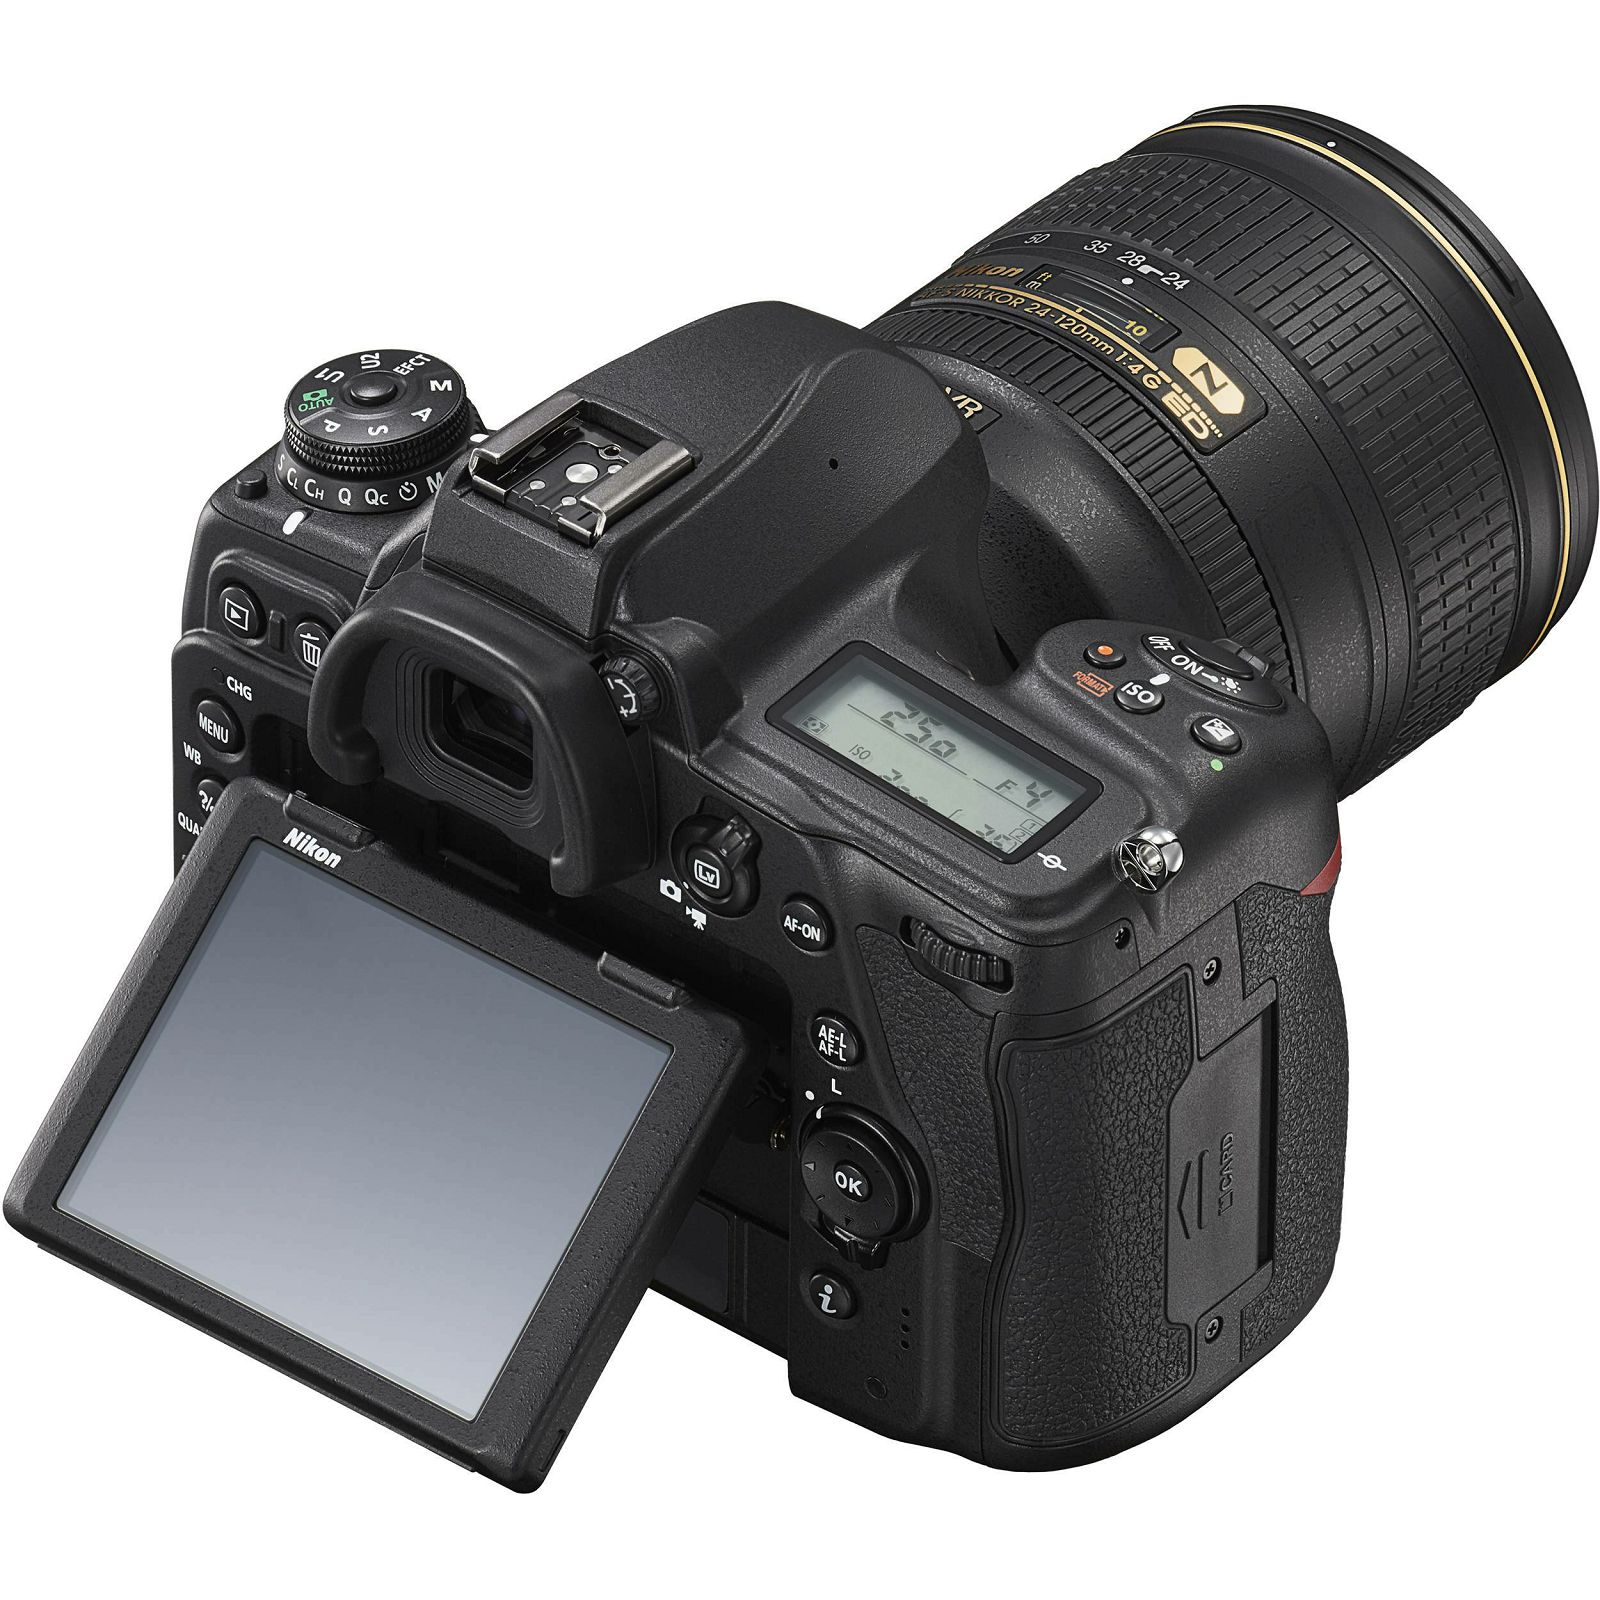 Nikon D780 Body DSLR Digitalni fotoaparat tijelo FX Full frame (VBA560AE)